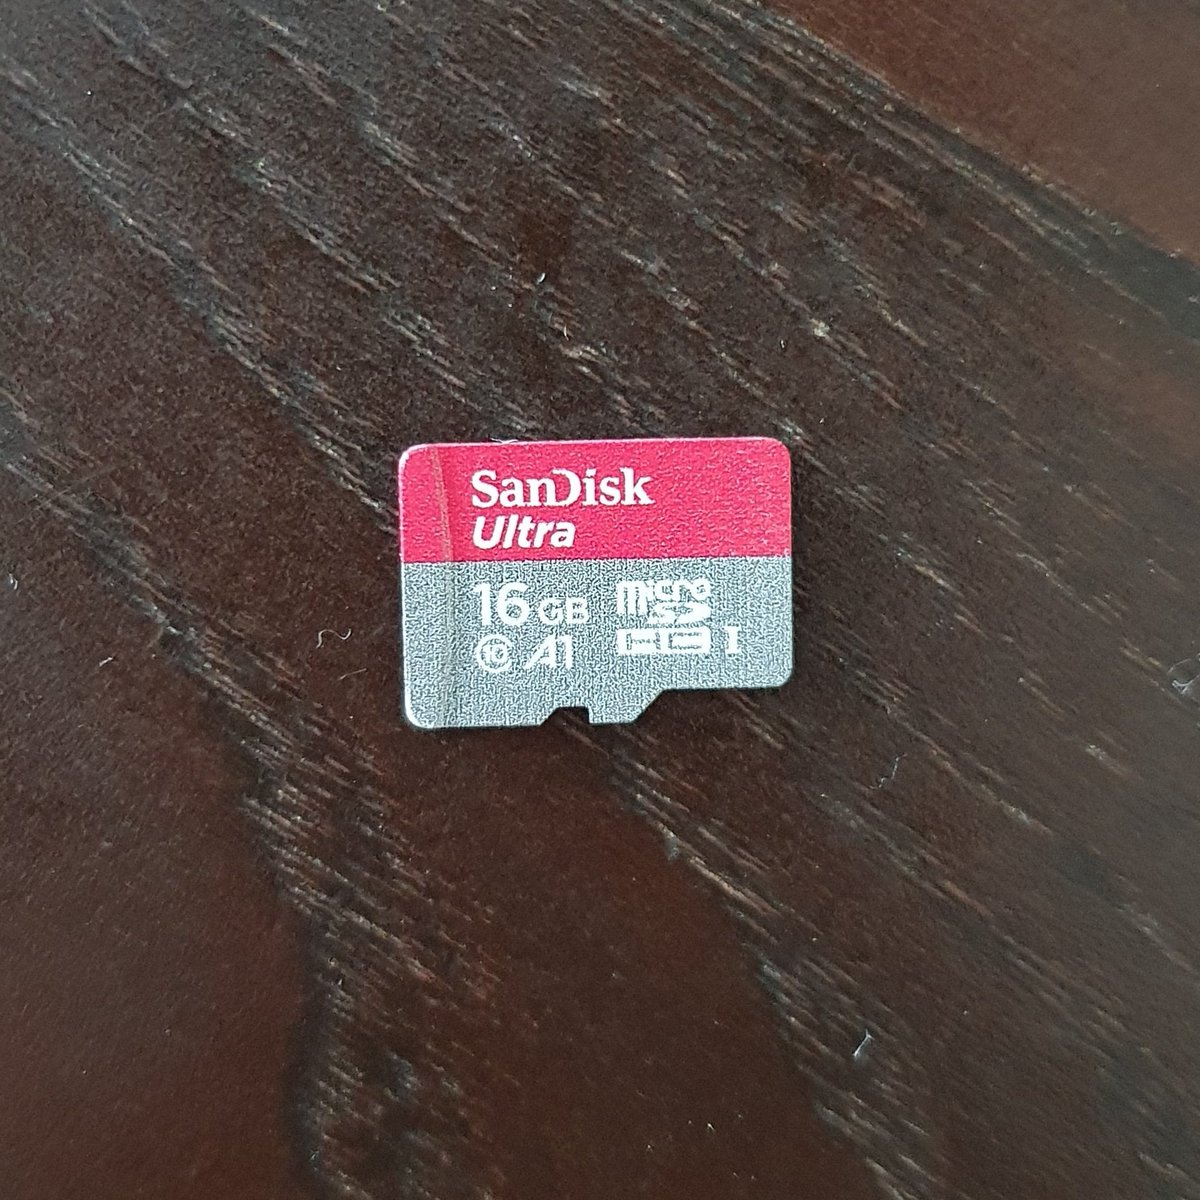 Storage guna the good old SanDisk Ultra 16GB. Games akan load dari external USB sticks kot instead of letak dalam ni. Laptop  @atikahhhrazak_ ni fx juga sebab ada microSD slot terus dan bukannya SD card slot.